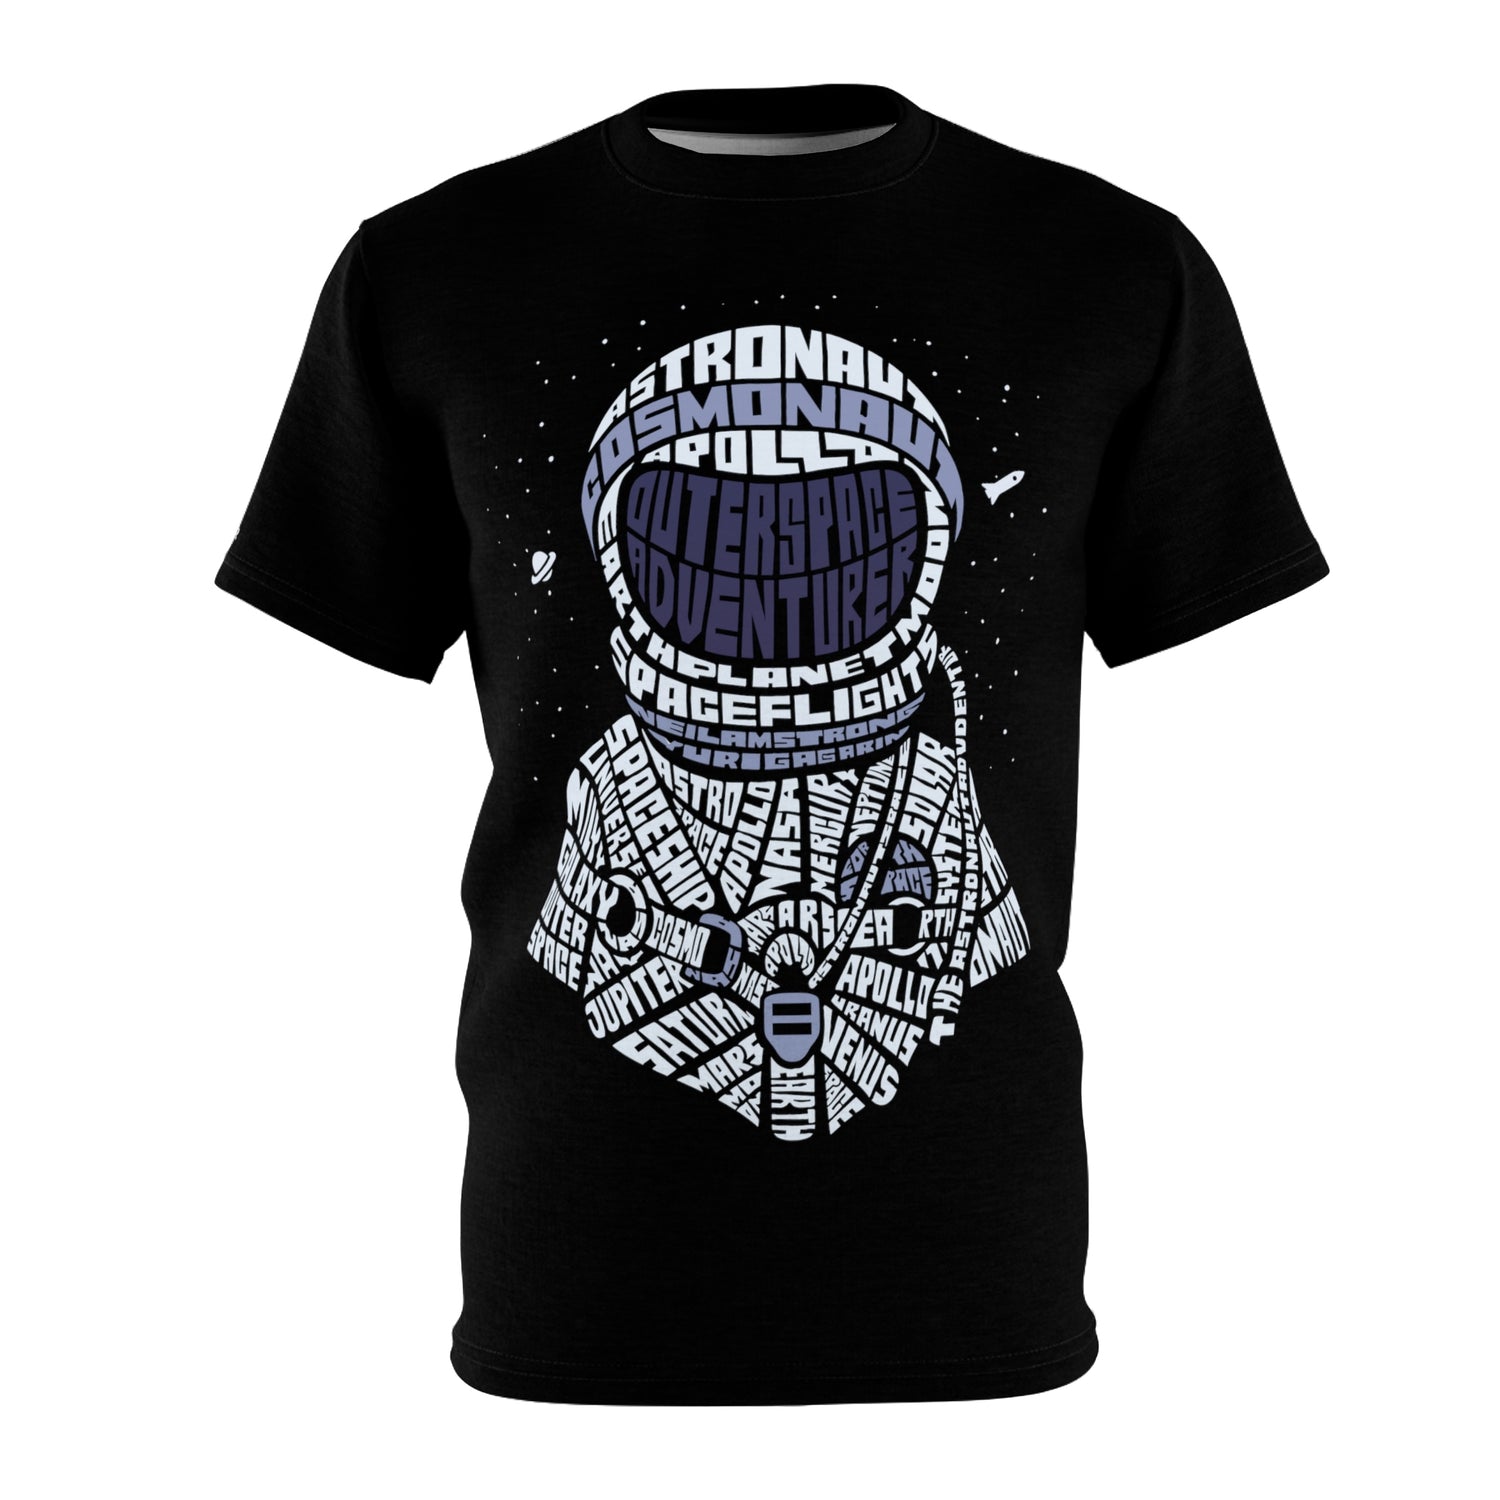 Black T-shirt with calligram astronaut design.